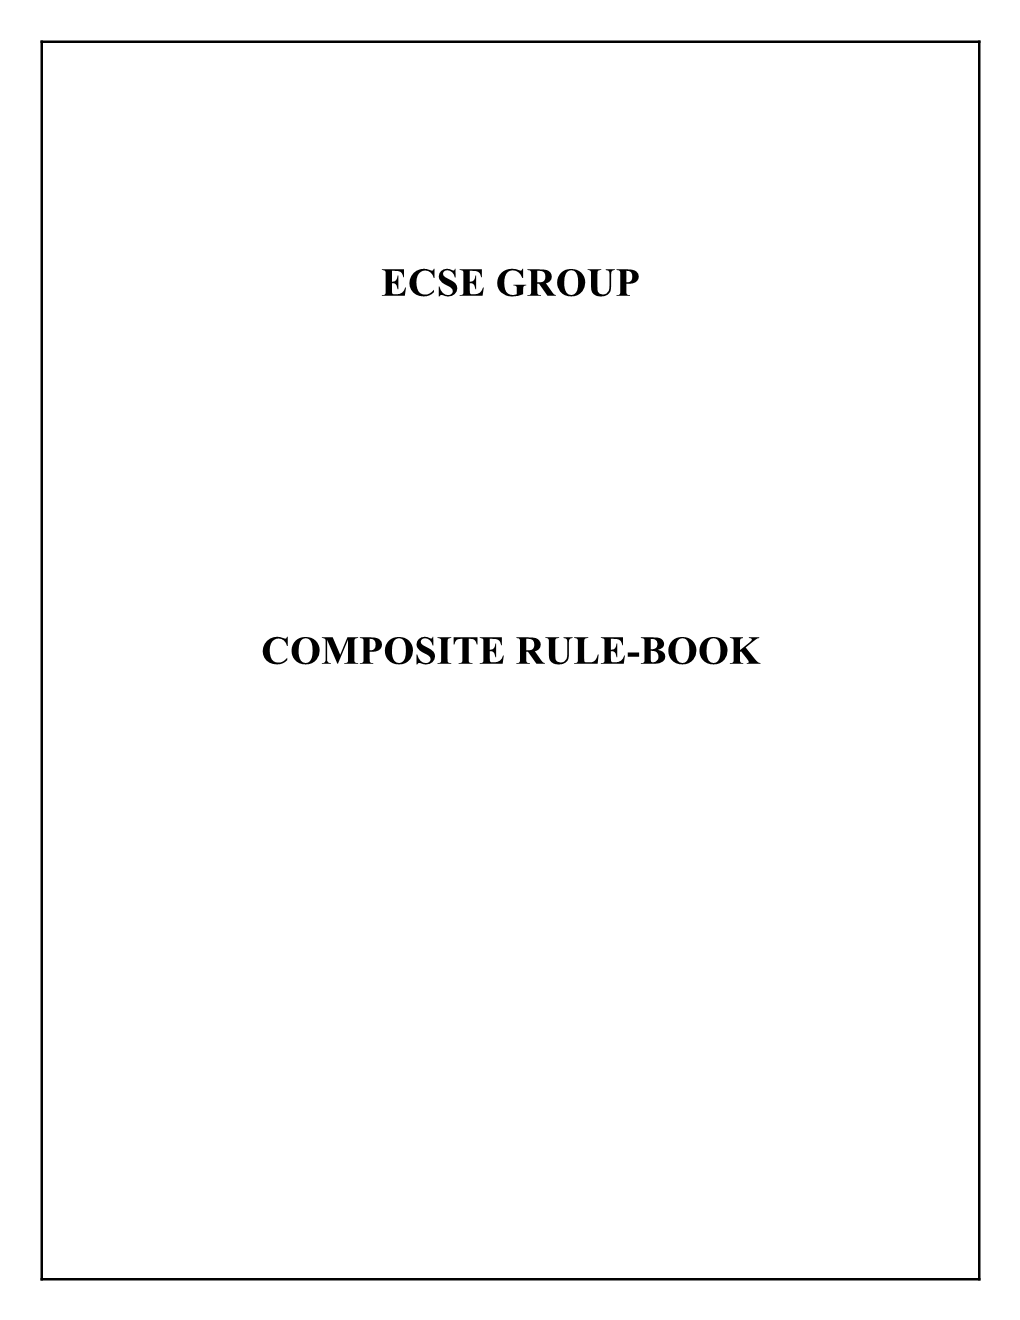 ECSE Composite Rule Book